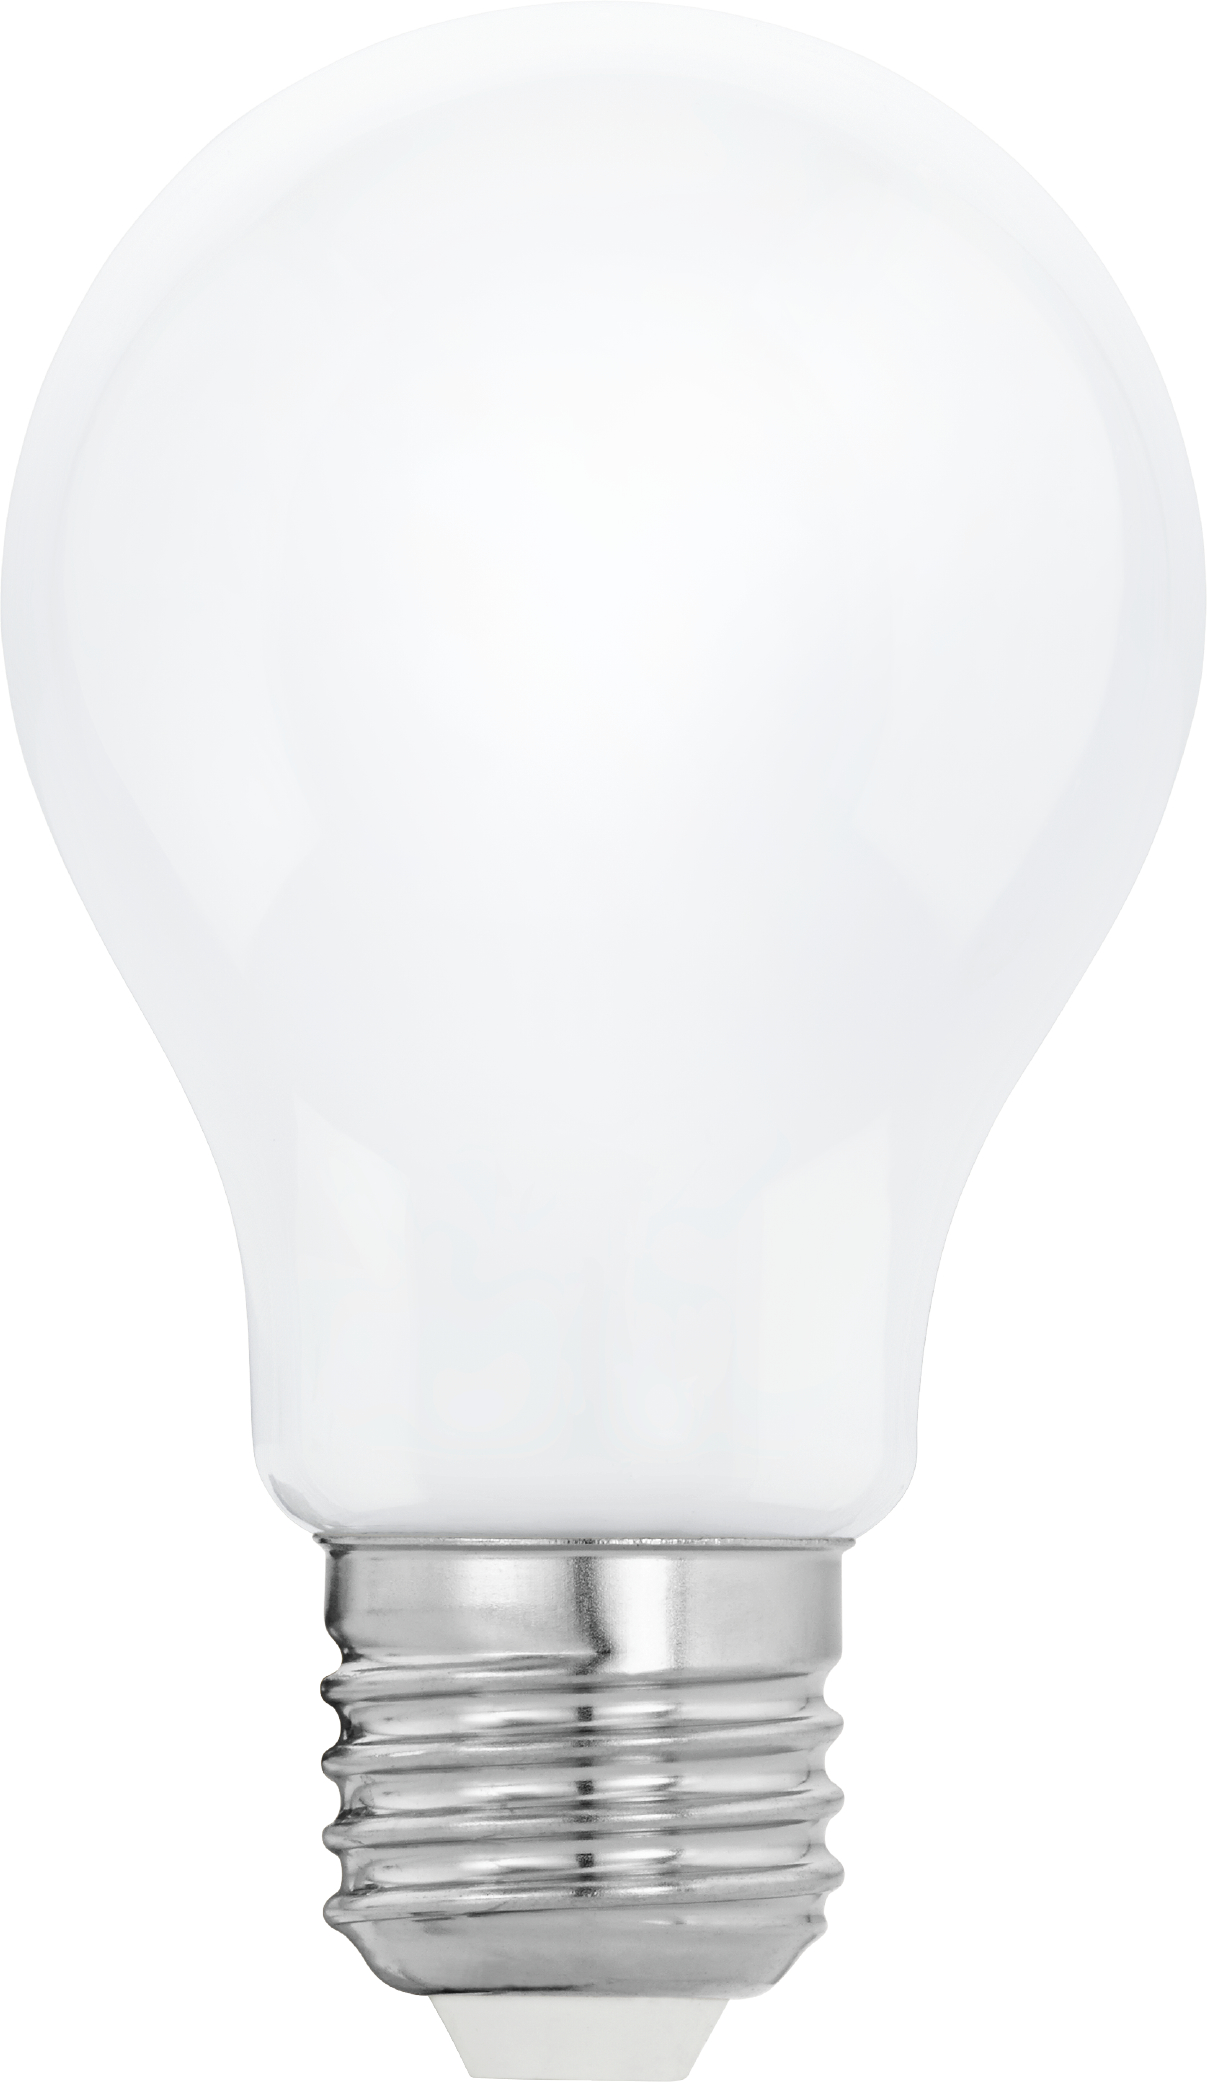 EGLO Ampoule LED E27 110035 1521 lumen, 12W